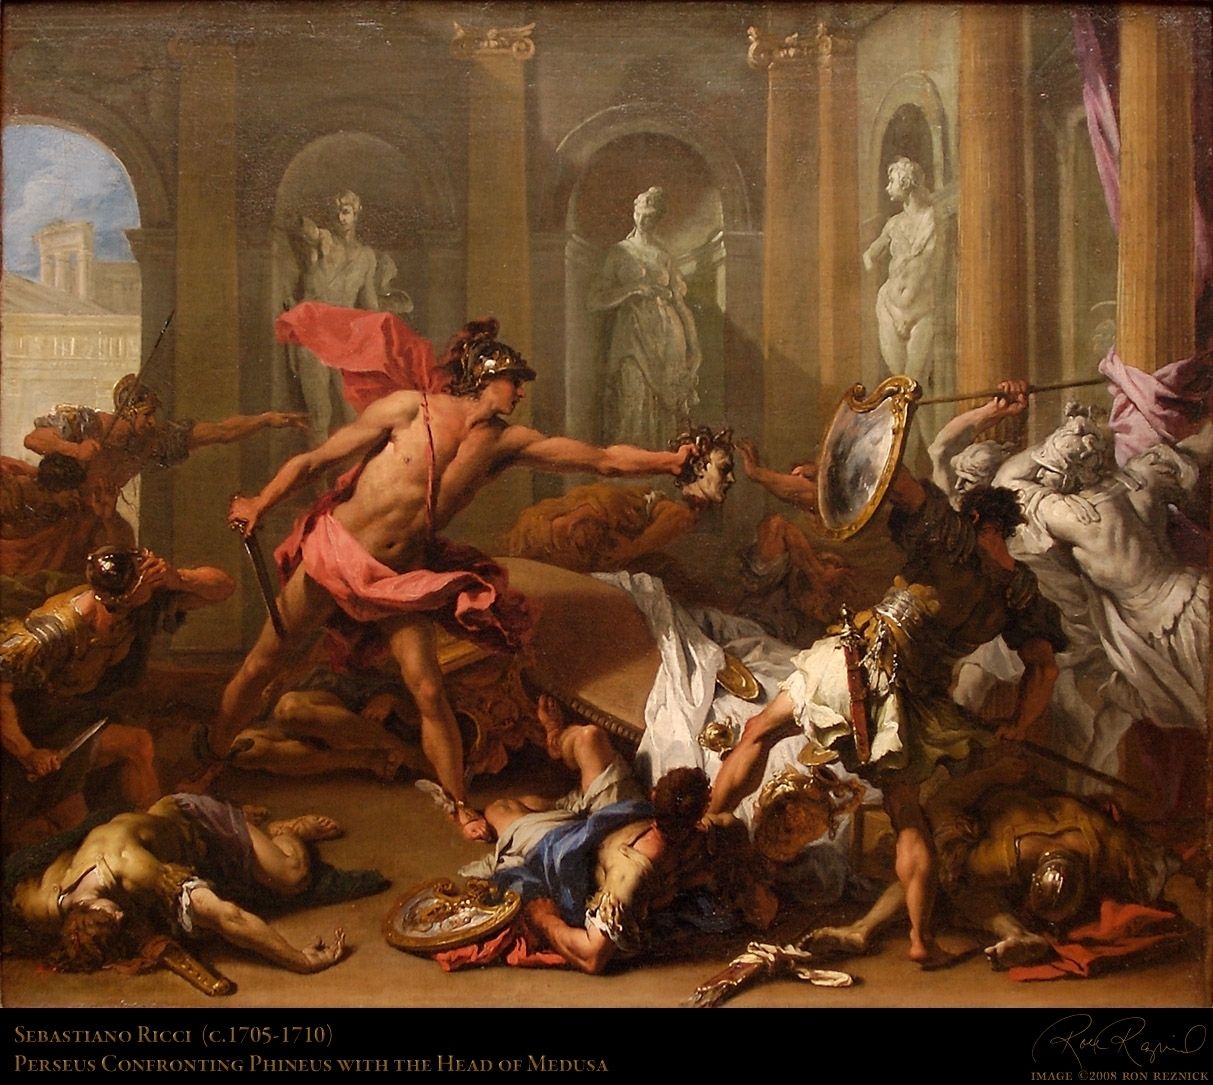 Perseus Wallpaper. Perseus Florence Wallpaper, The Clash of Titans Perseus Wallpaper and Perseus Wallpaper